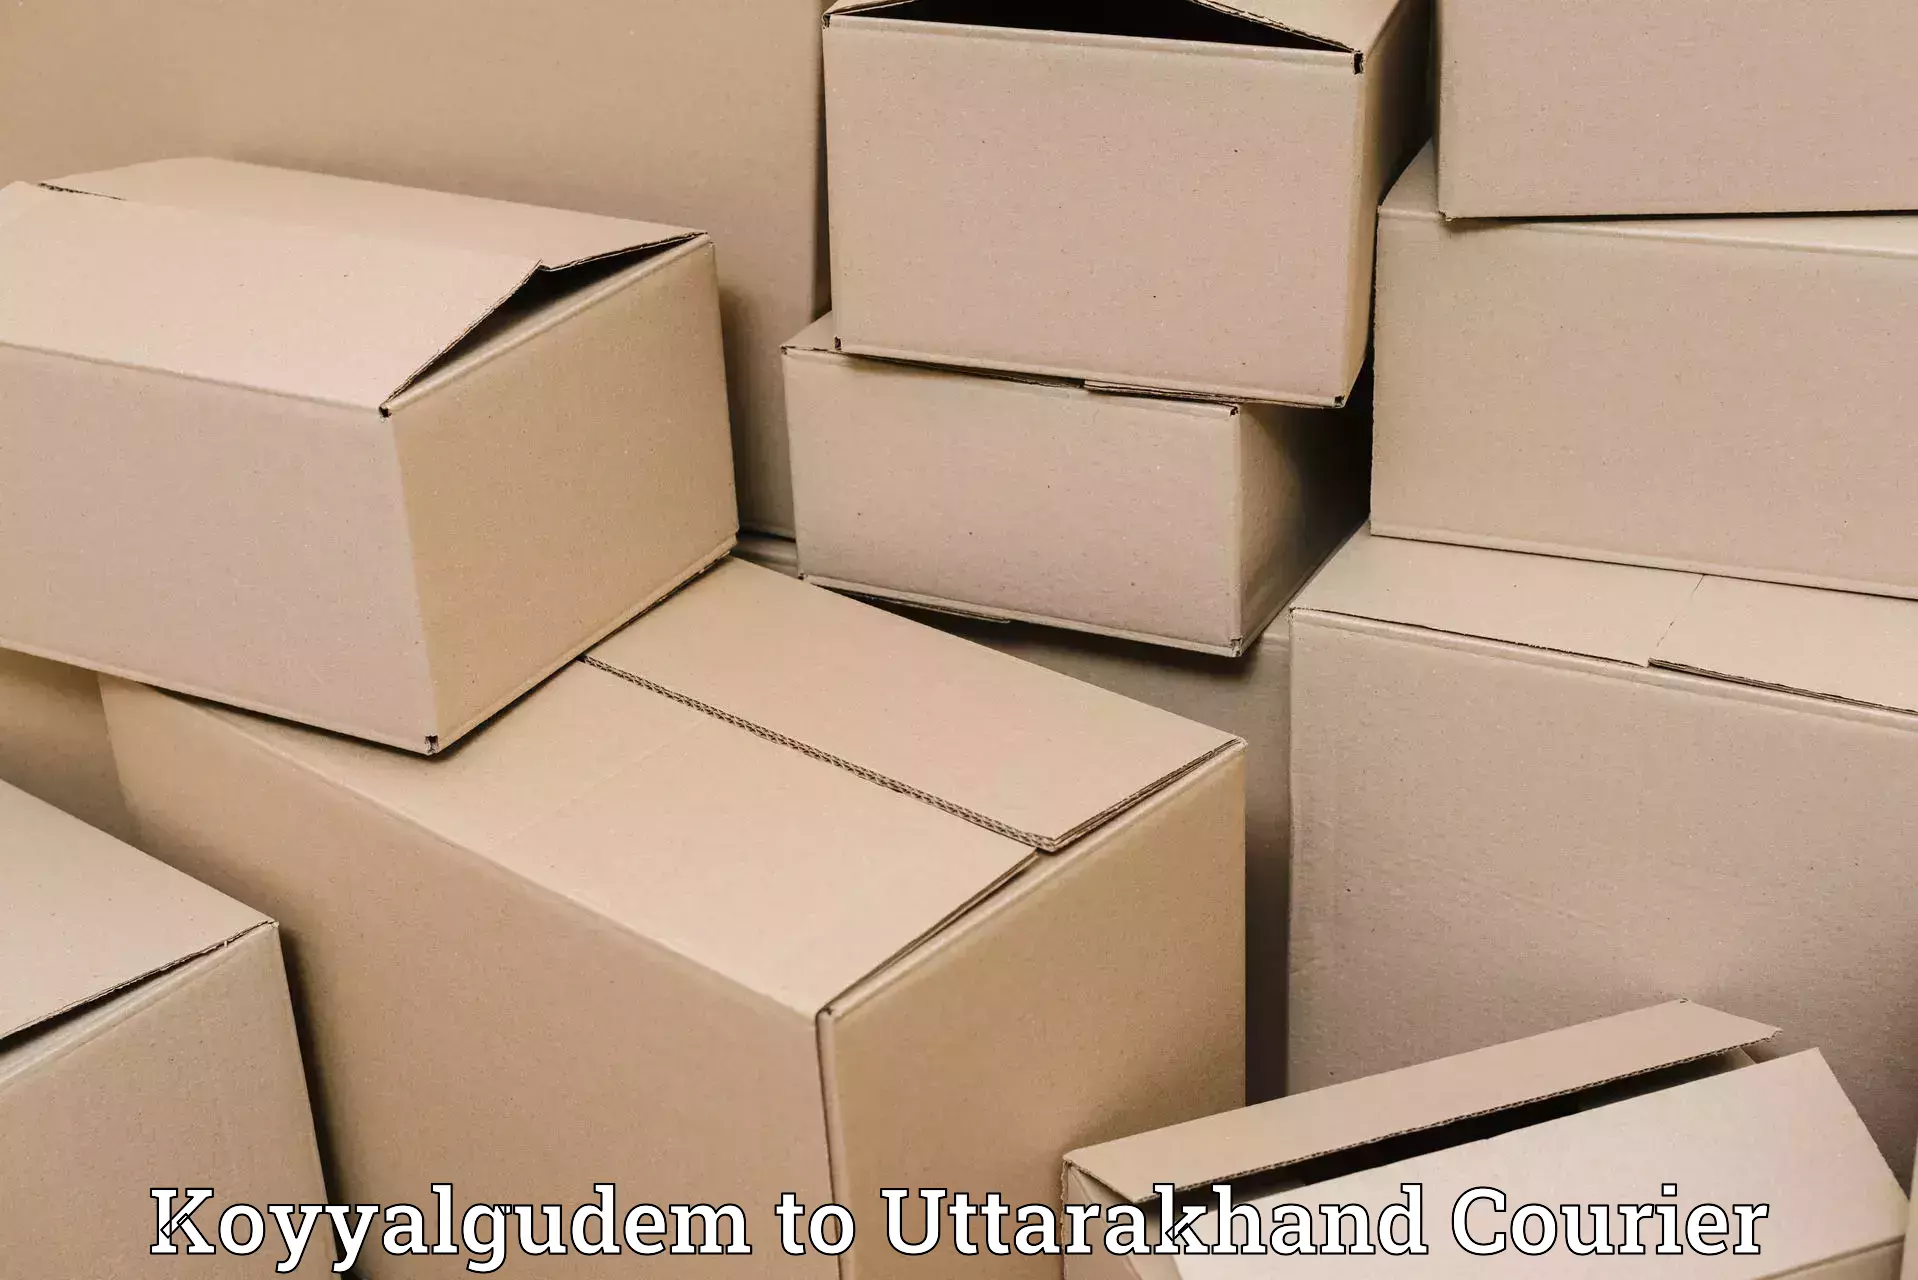 Premium courier services Koyyalgudem to Dehradun